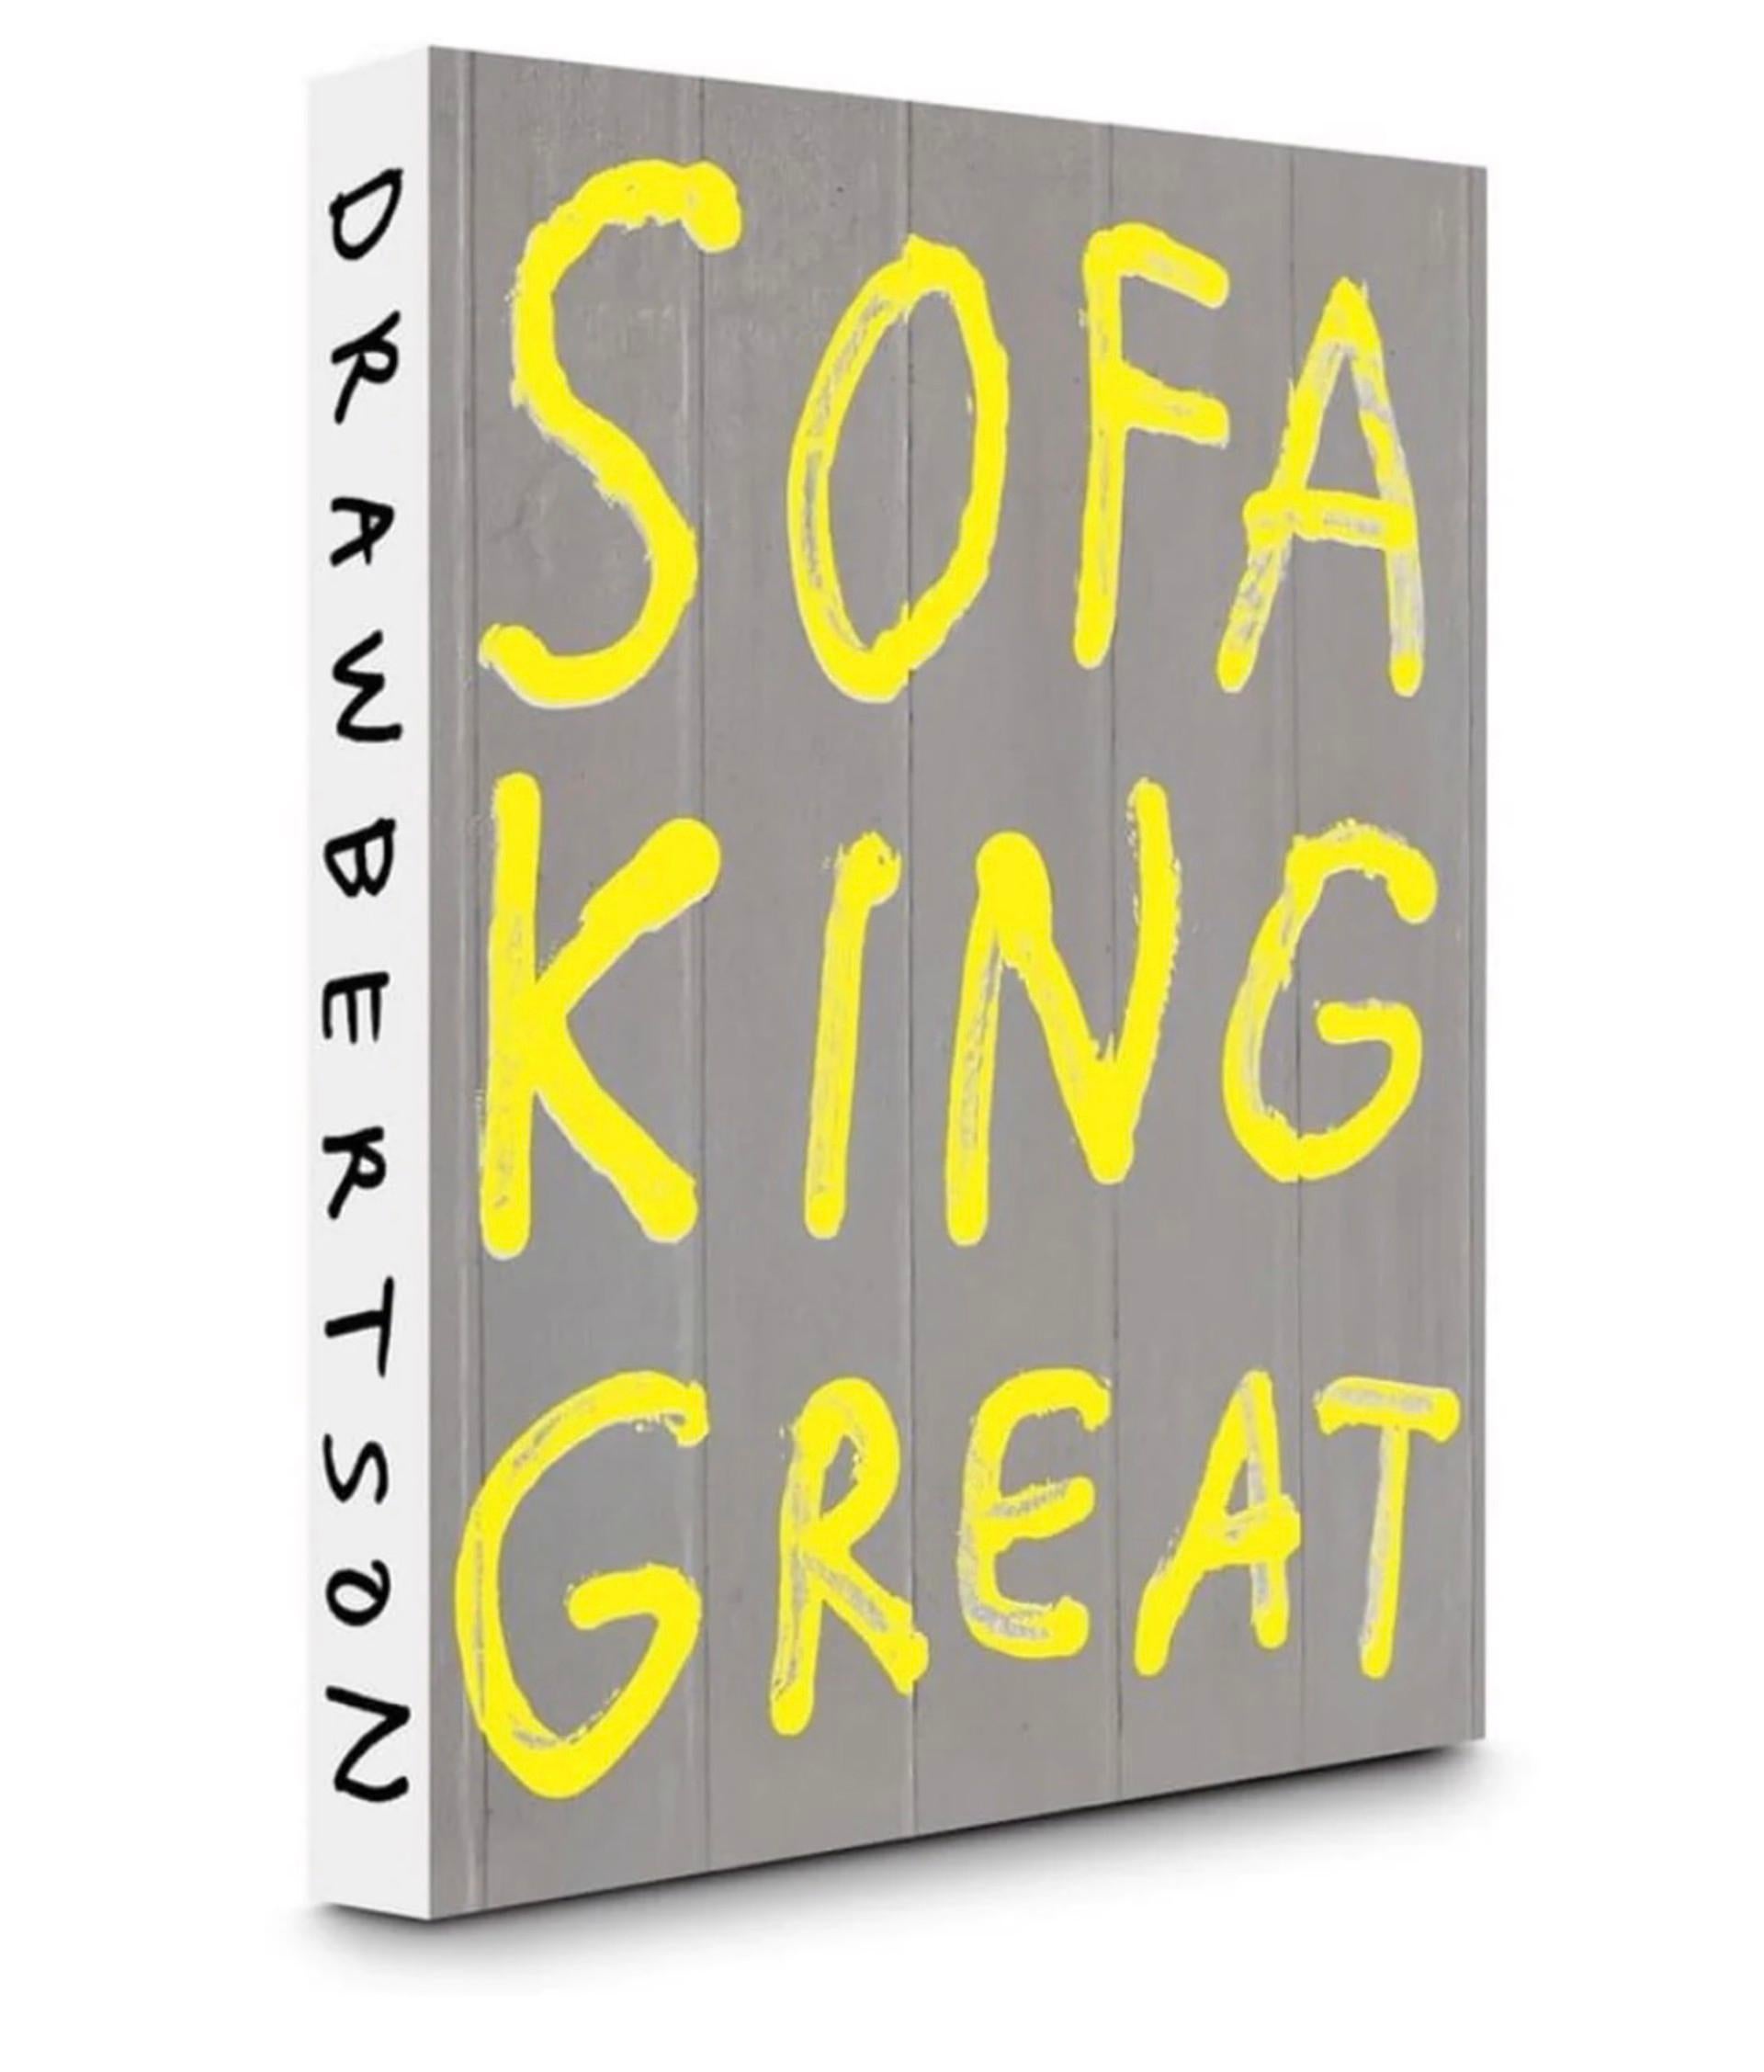 Donald Robertson Abstract Print - Sofa King Great 